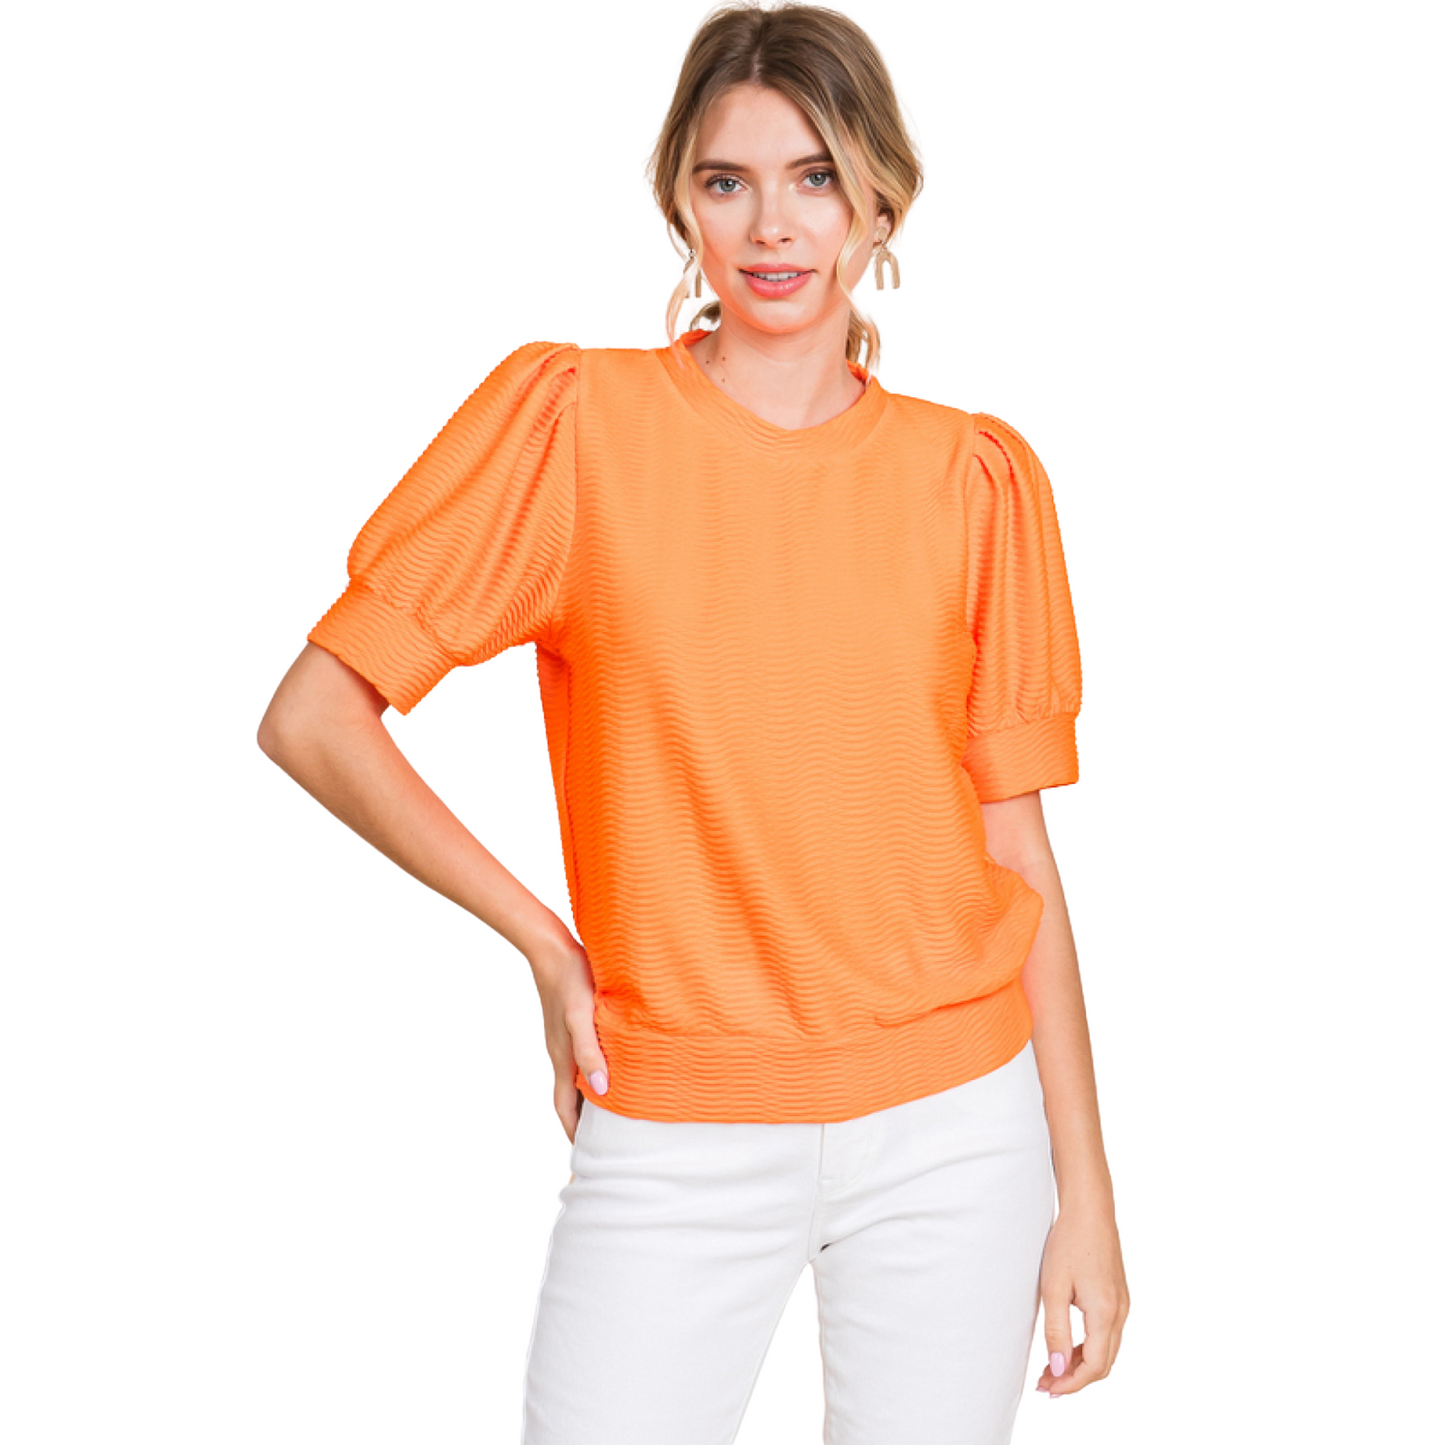 Textured short sleeve top in neon orange